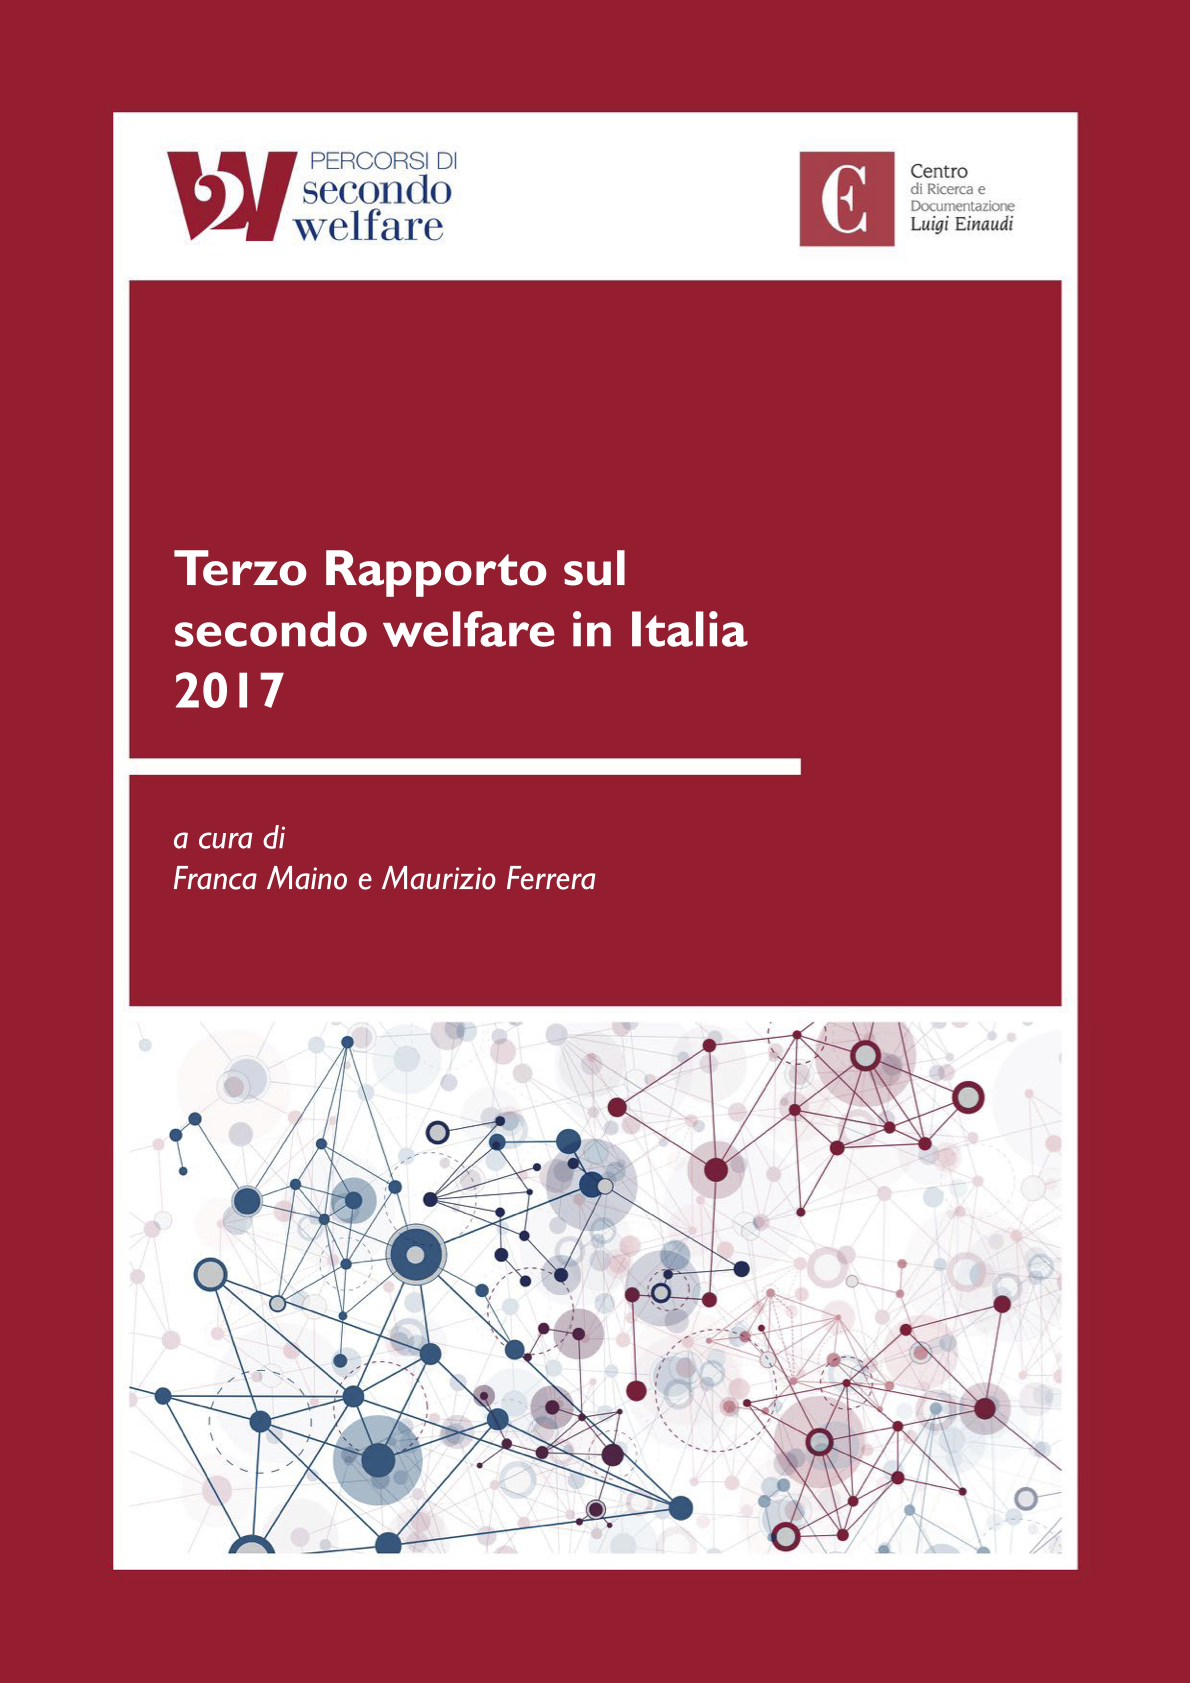 Terzo Rapporto sul secondo welfare in Italia 2017